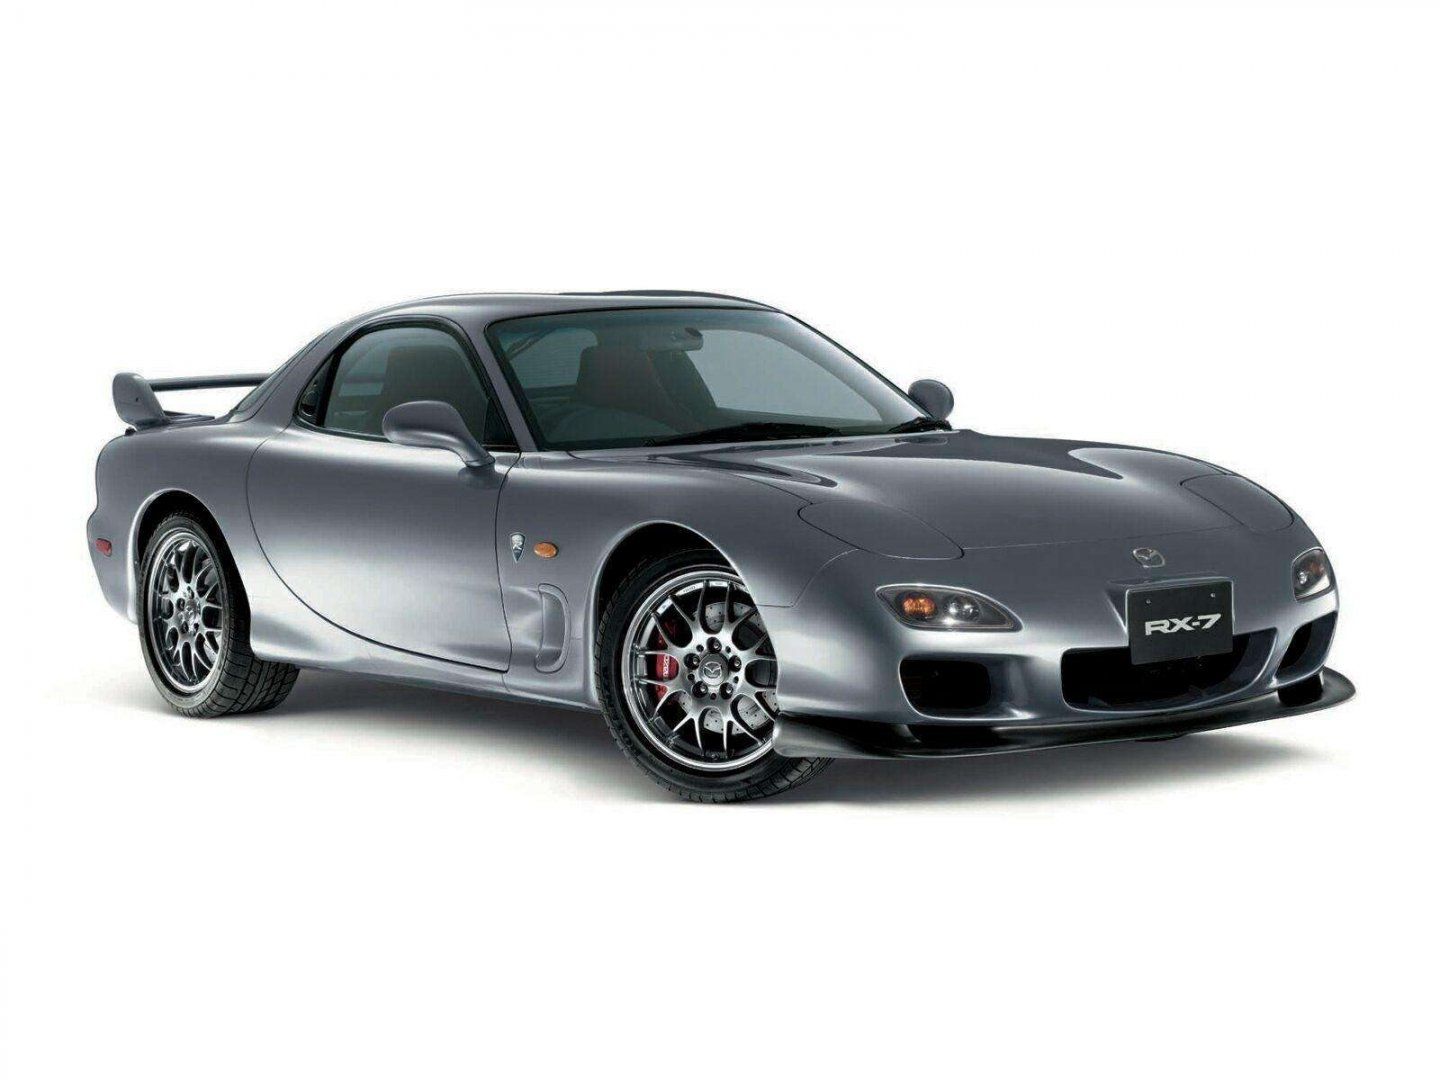 1999-Mazda-RX7.jpg